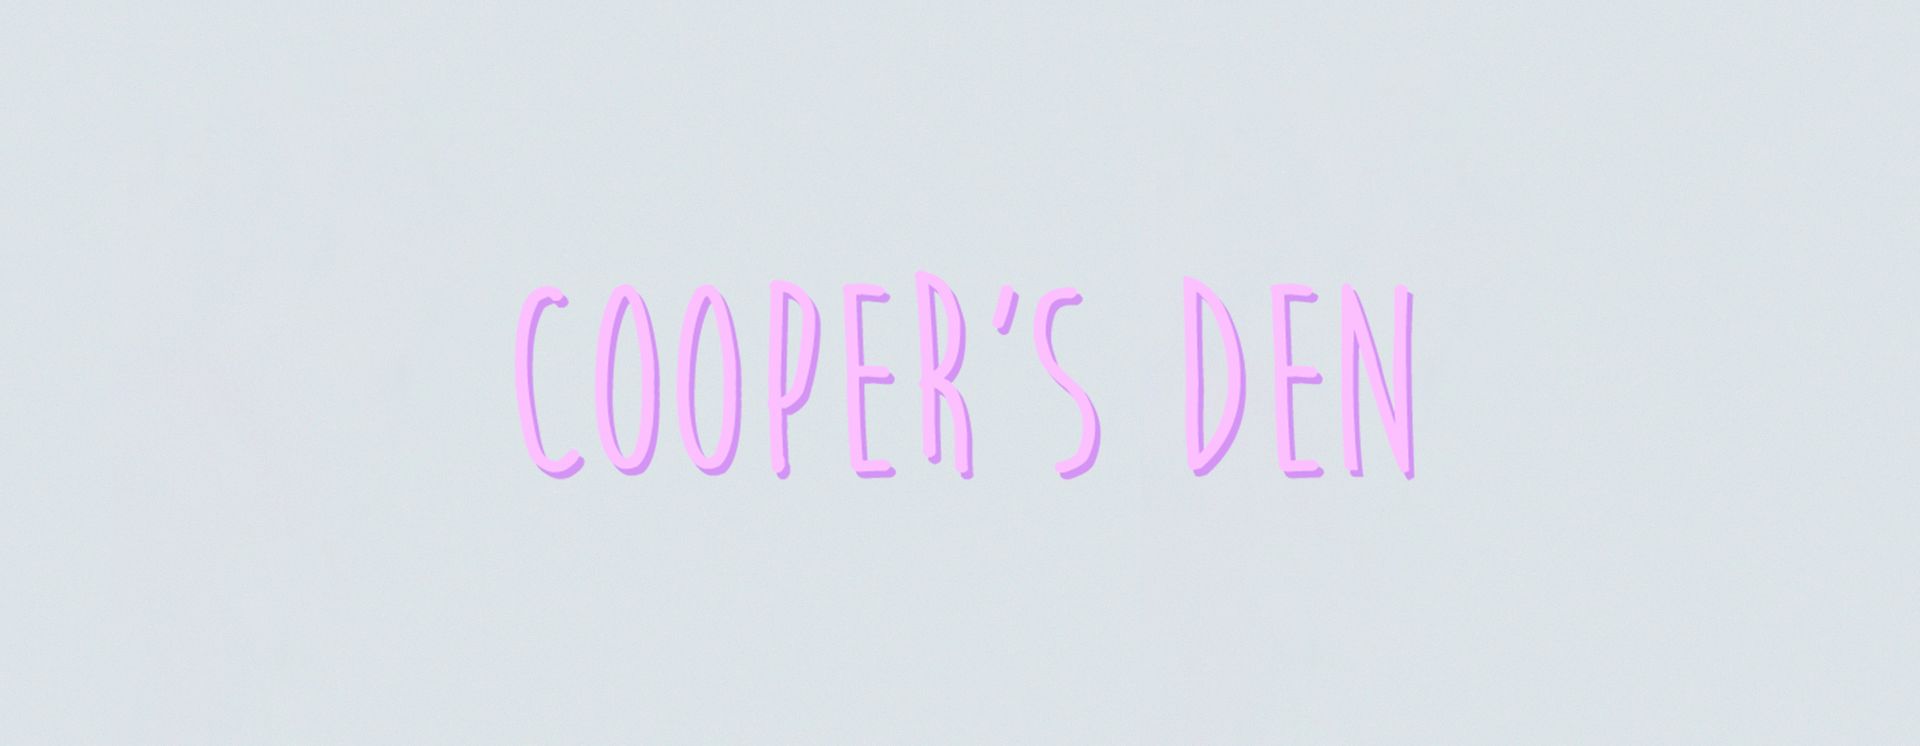 COOPER'S DEN logo